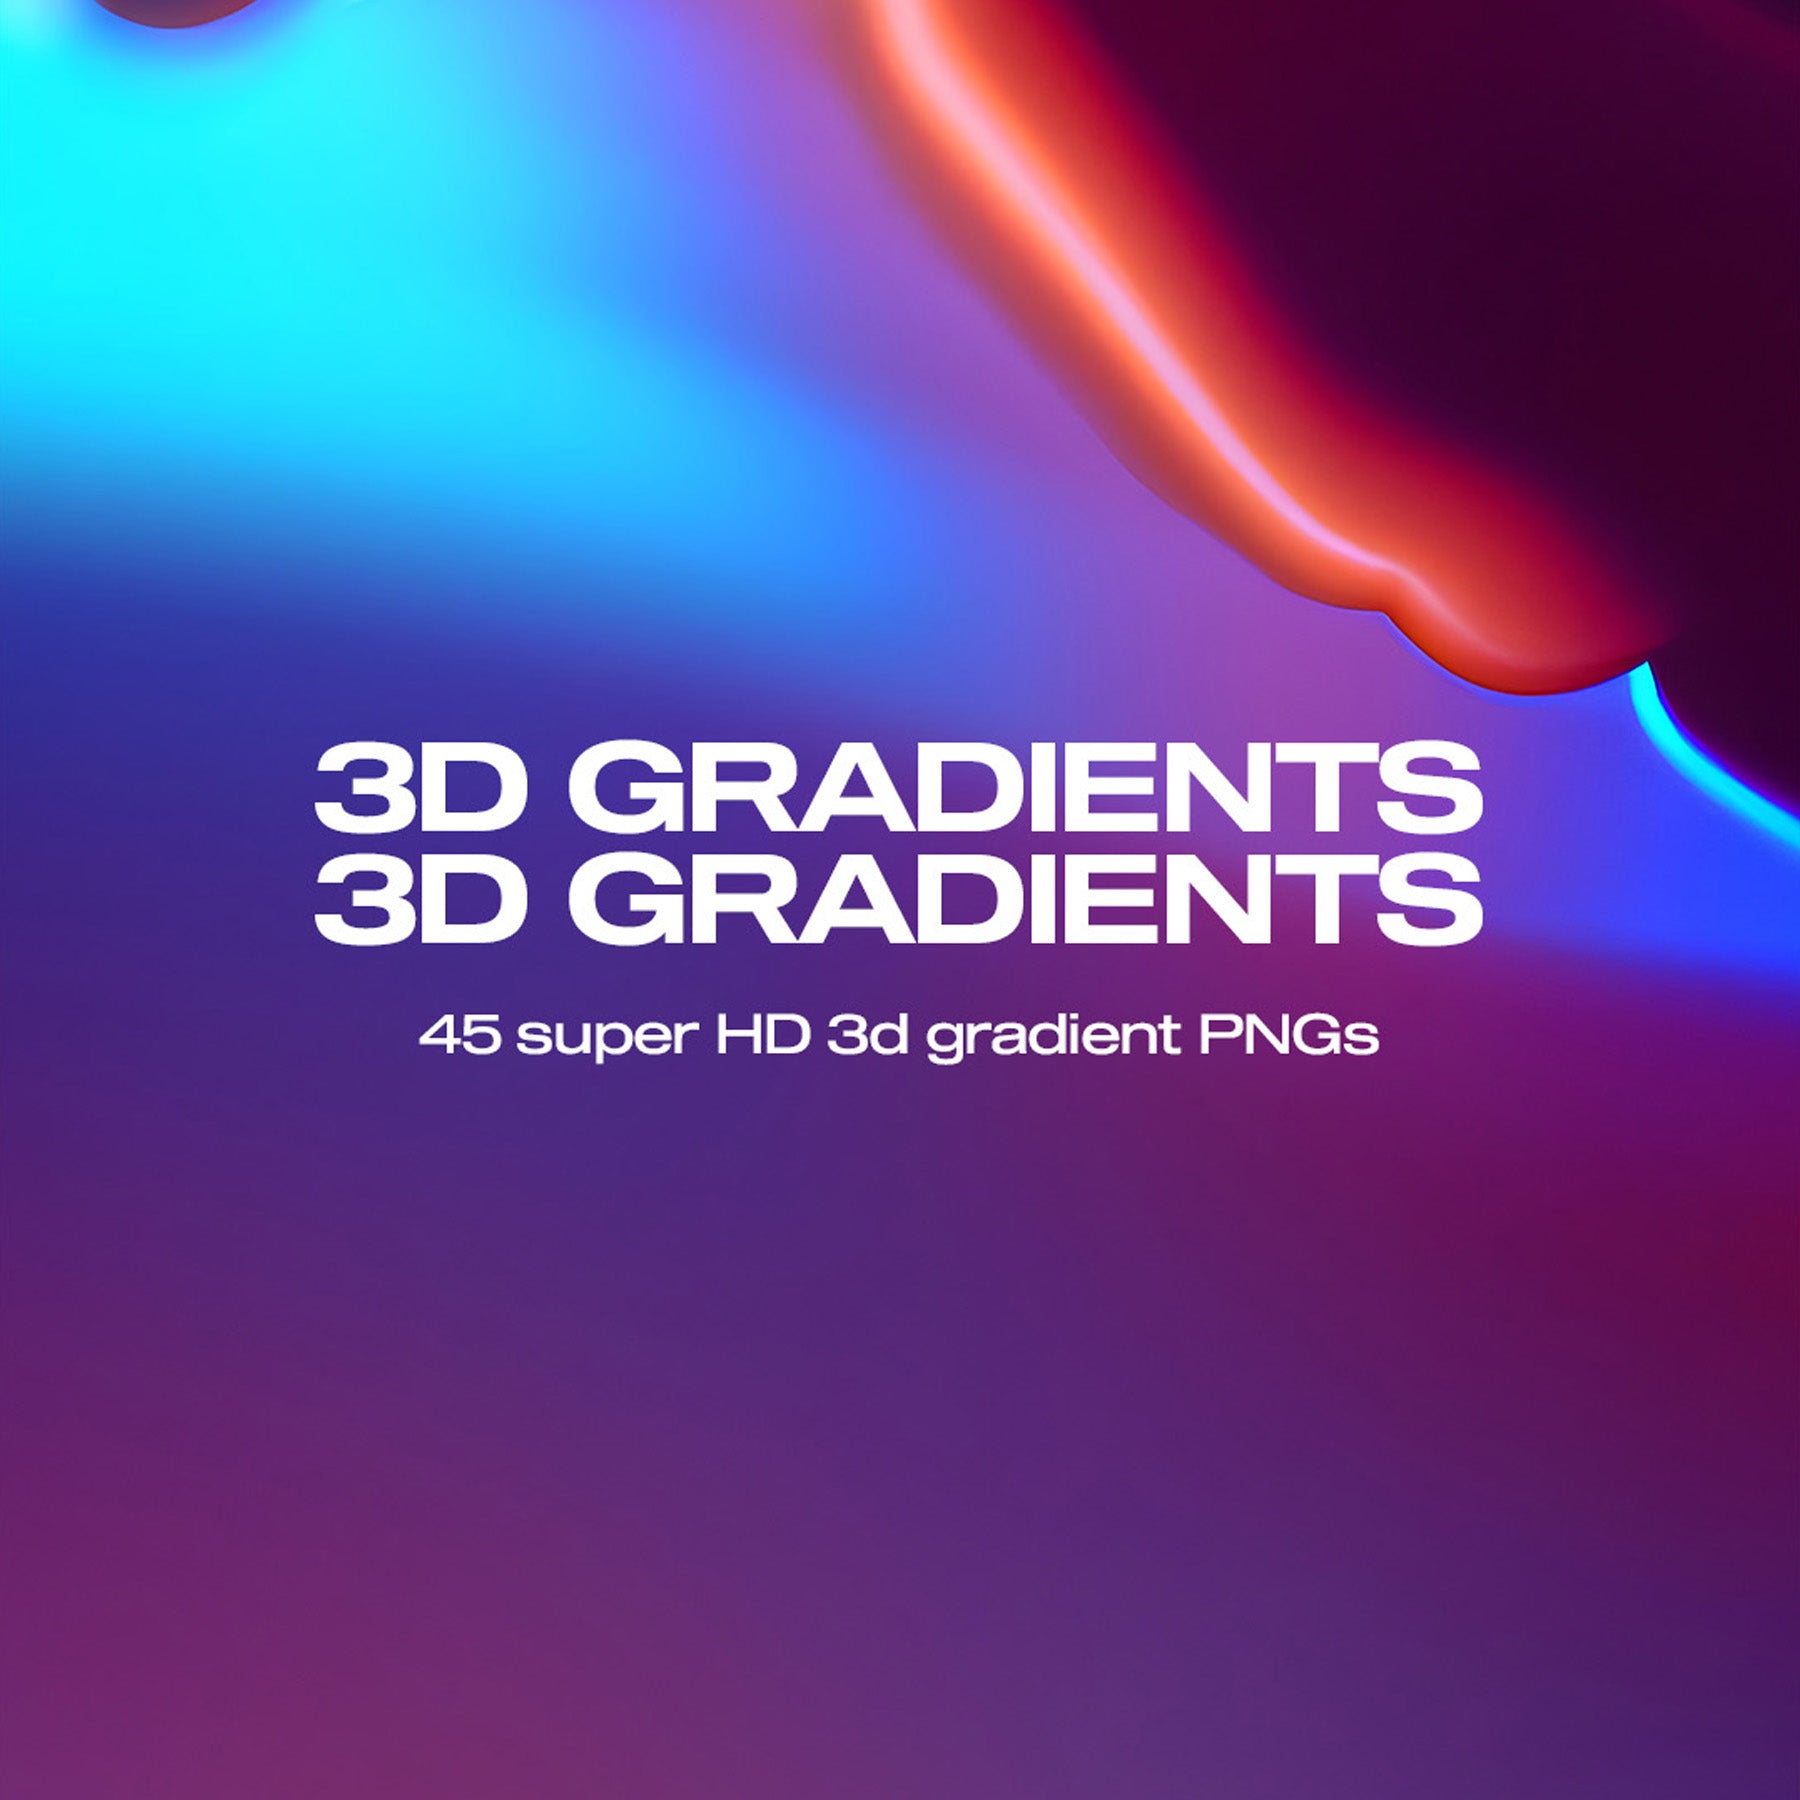 3D Gradients